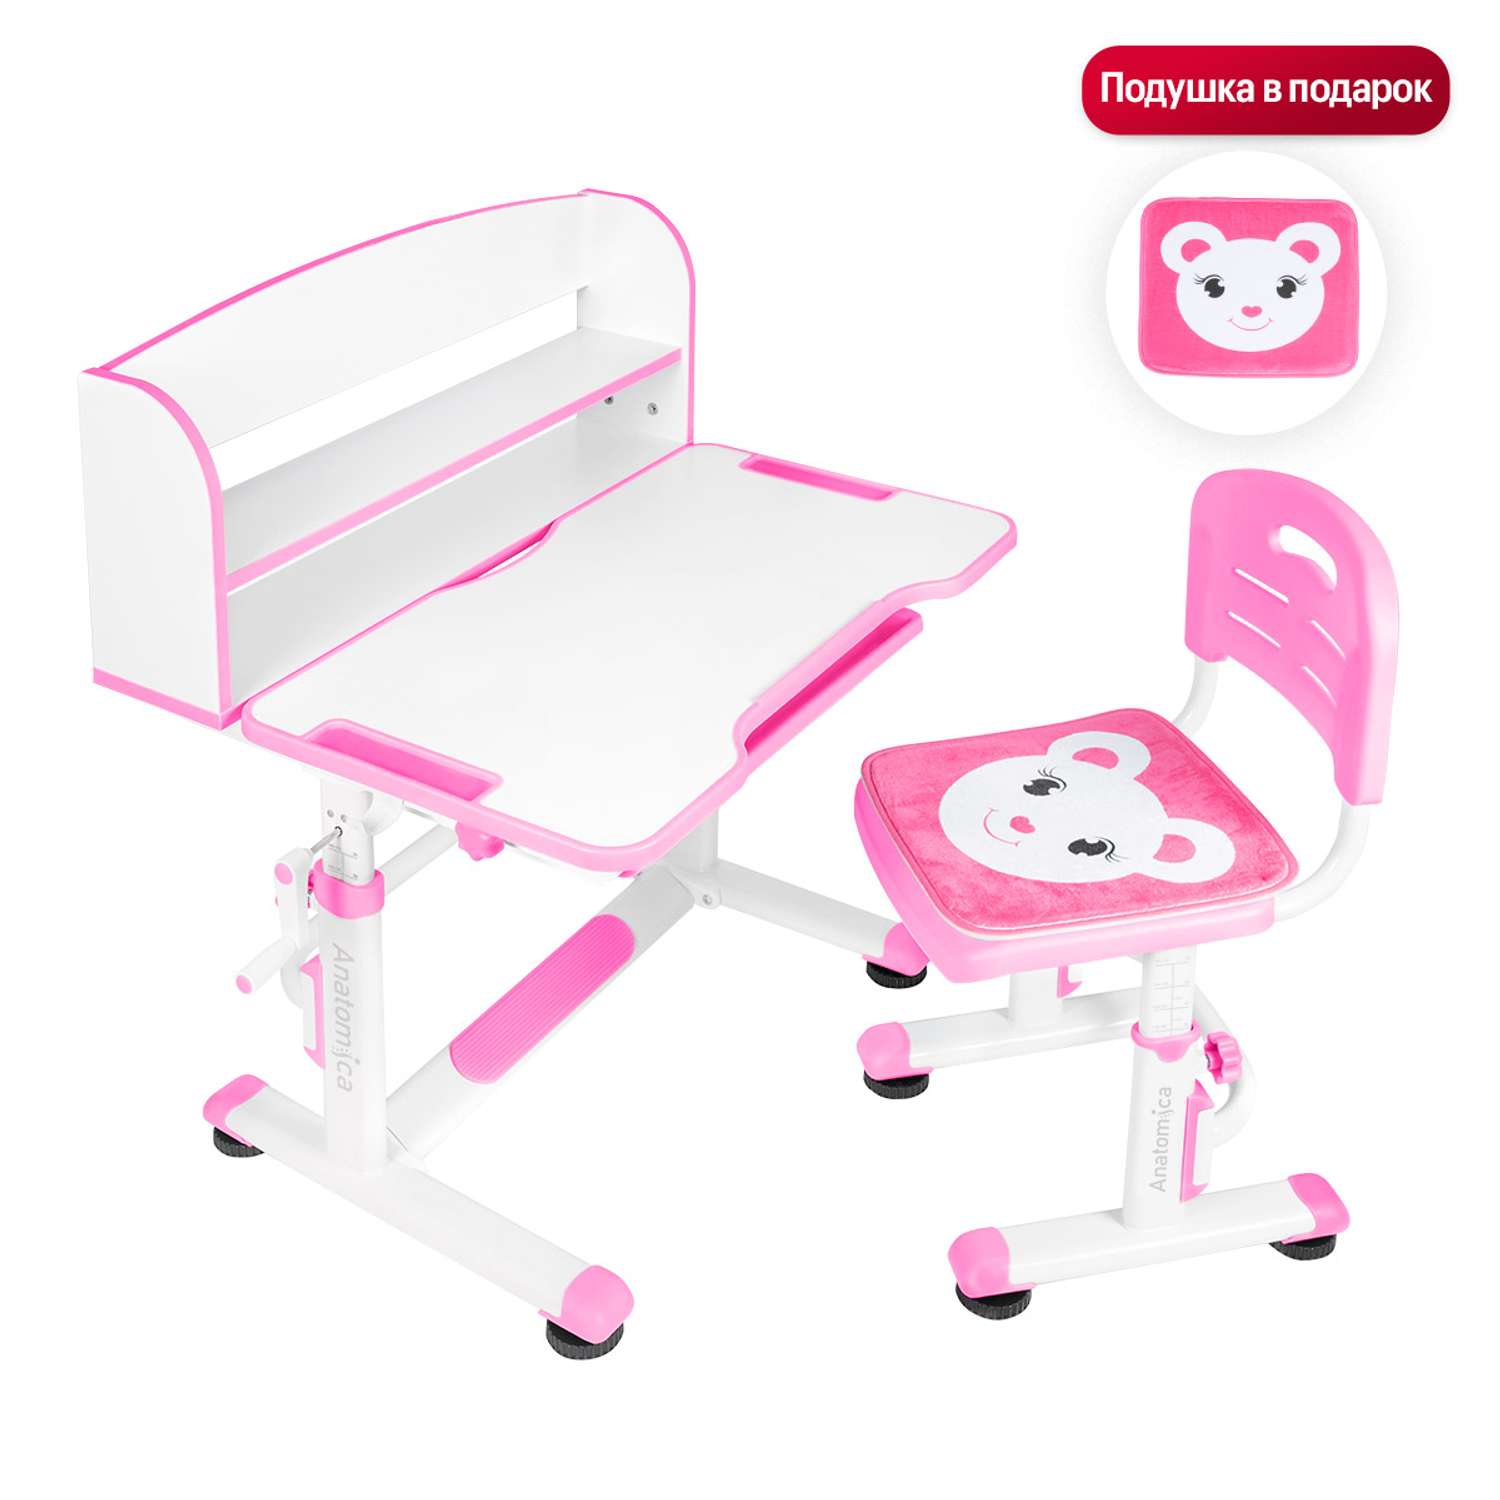 Комплект парта + стул Anatomica Legare белый/розовый - фото 2